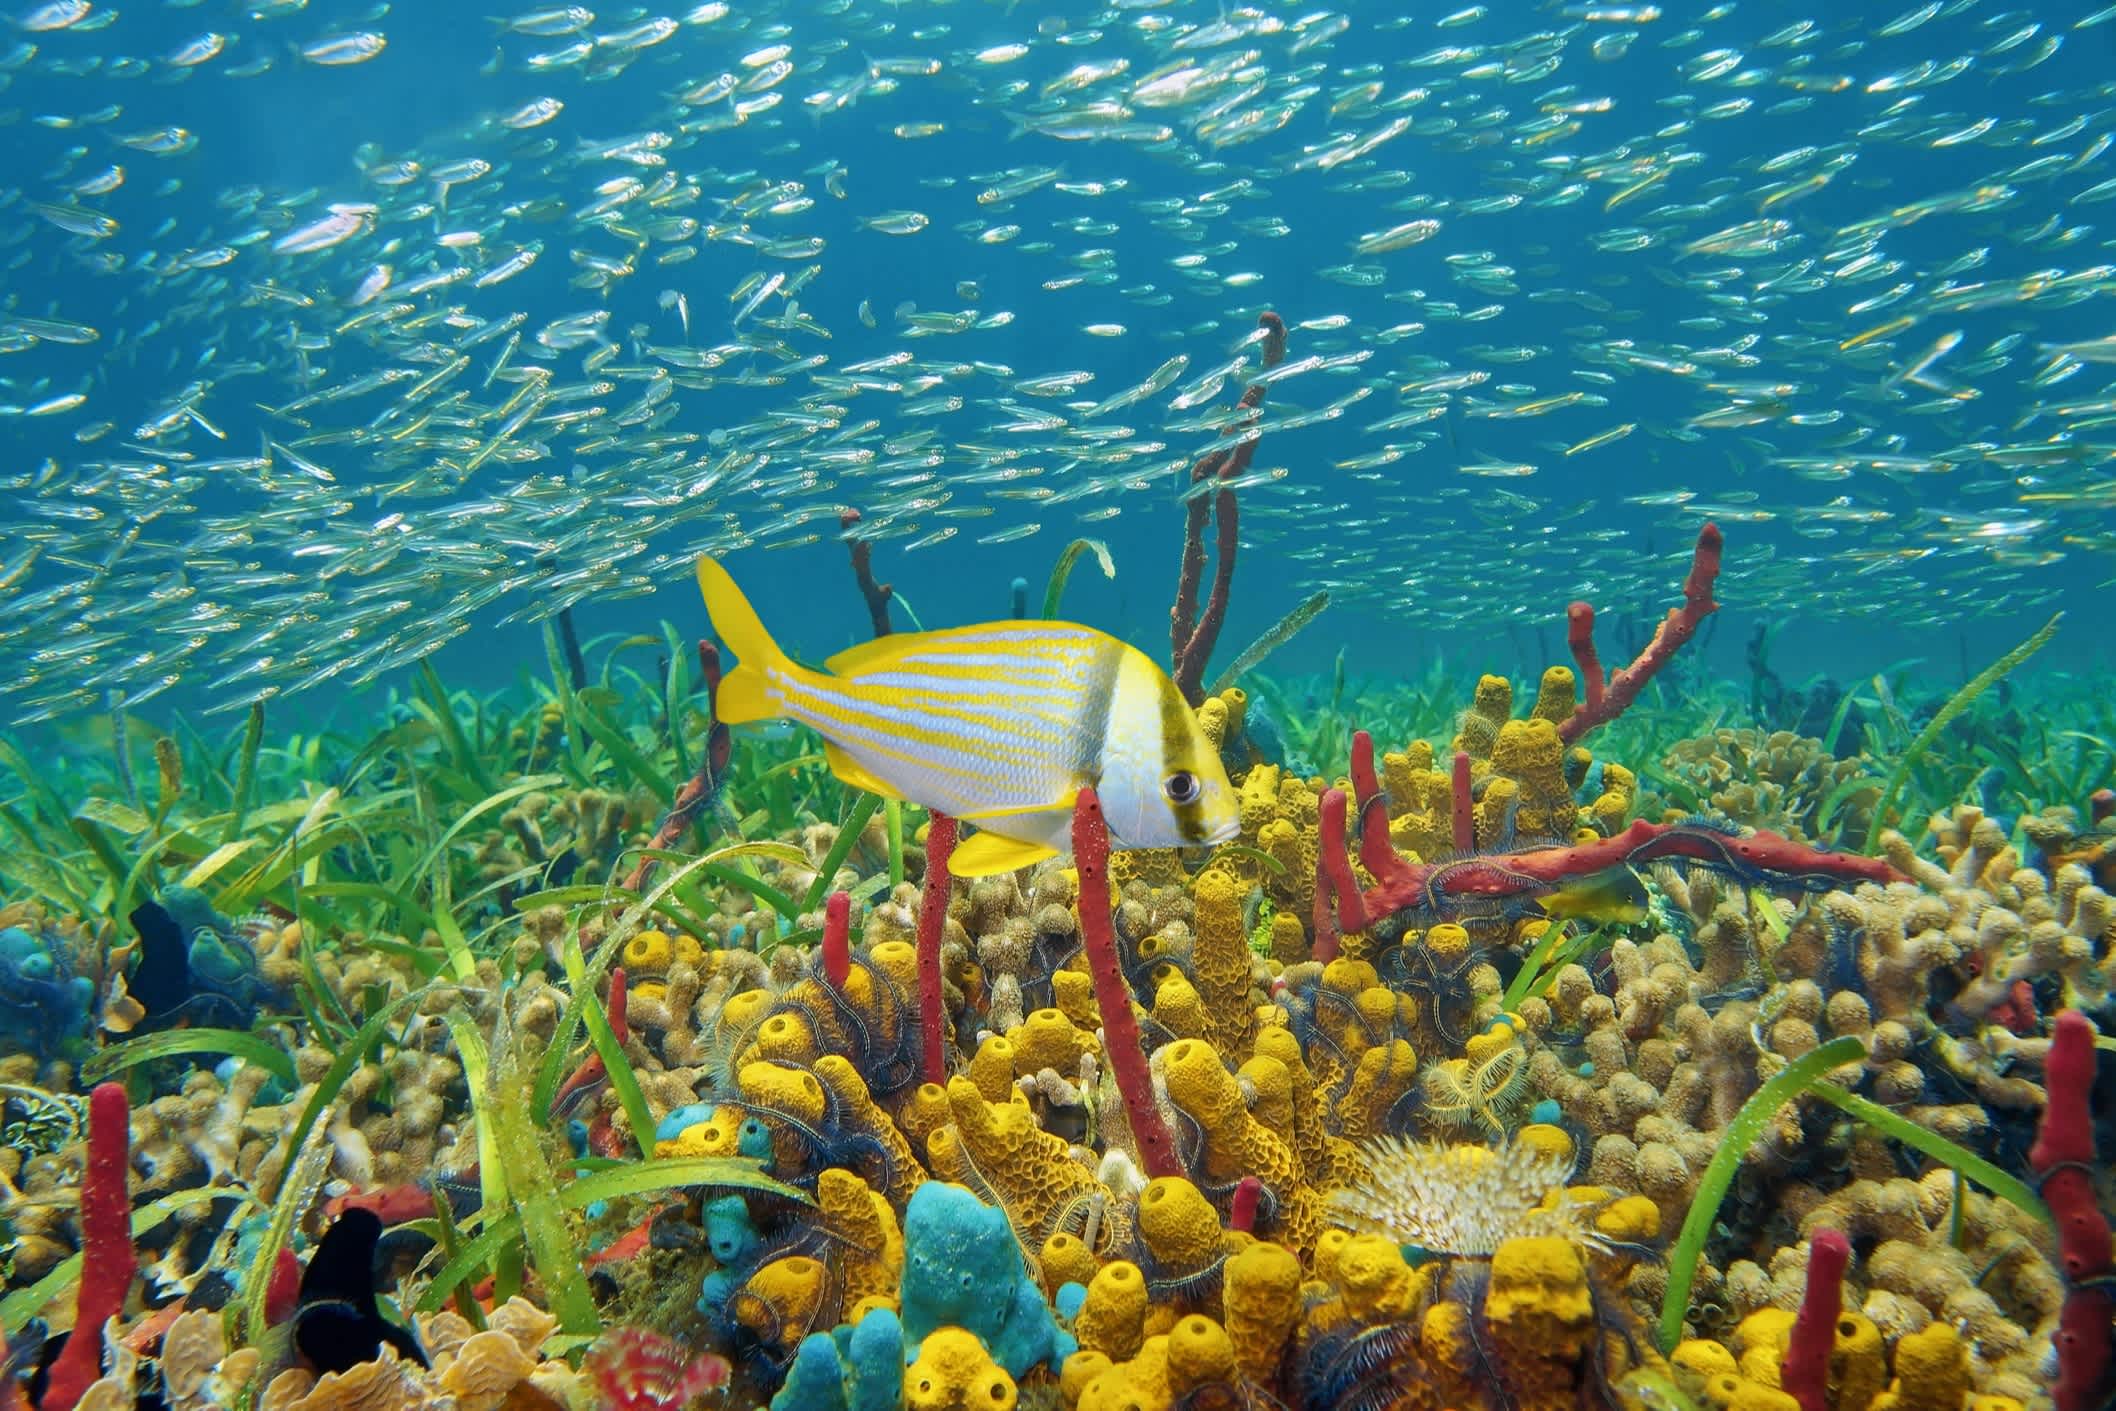 Buntes Unterwasserleben mit Schwämmen, Korallen und Fischschwärmen, karibisches Meer an der Küste Kolumbiens.